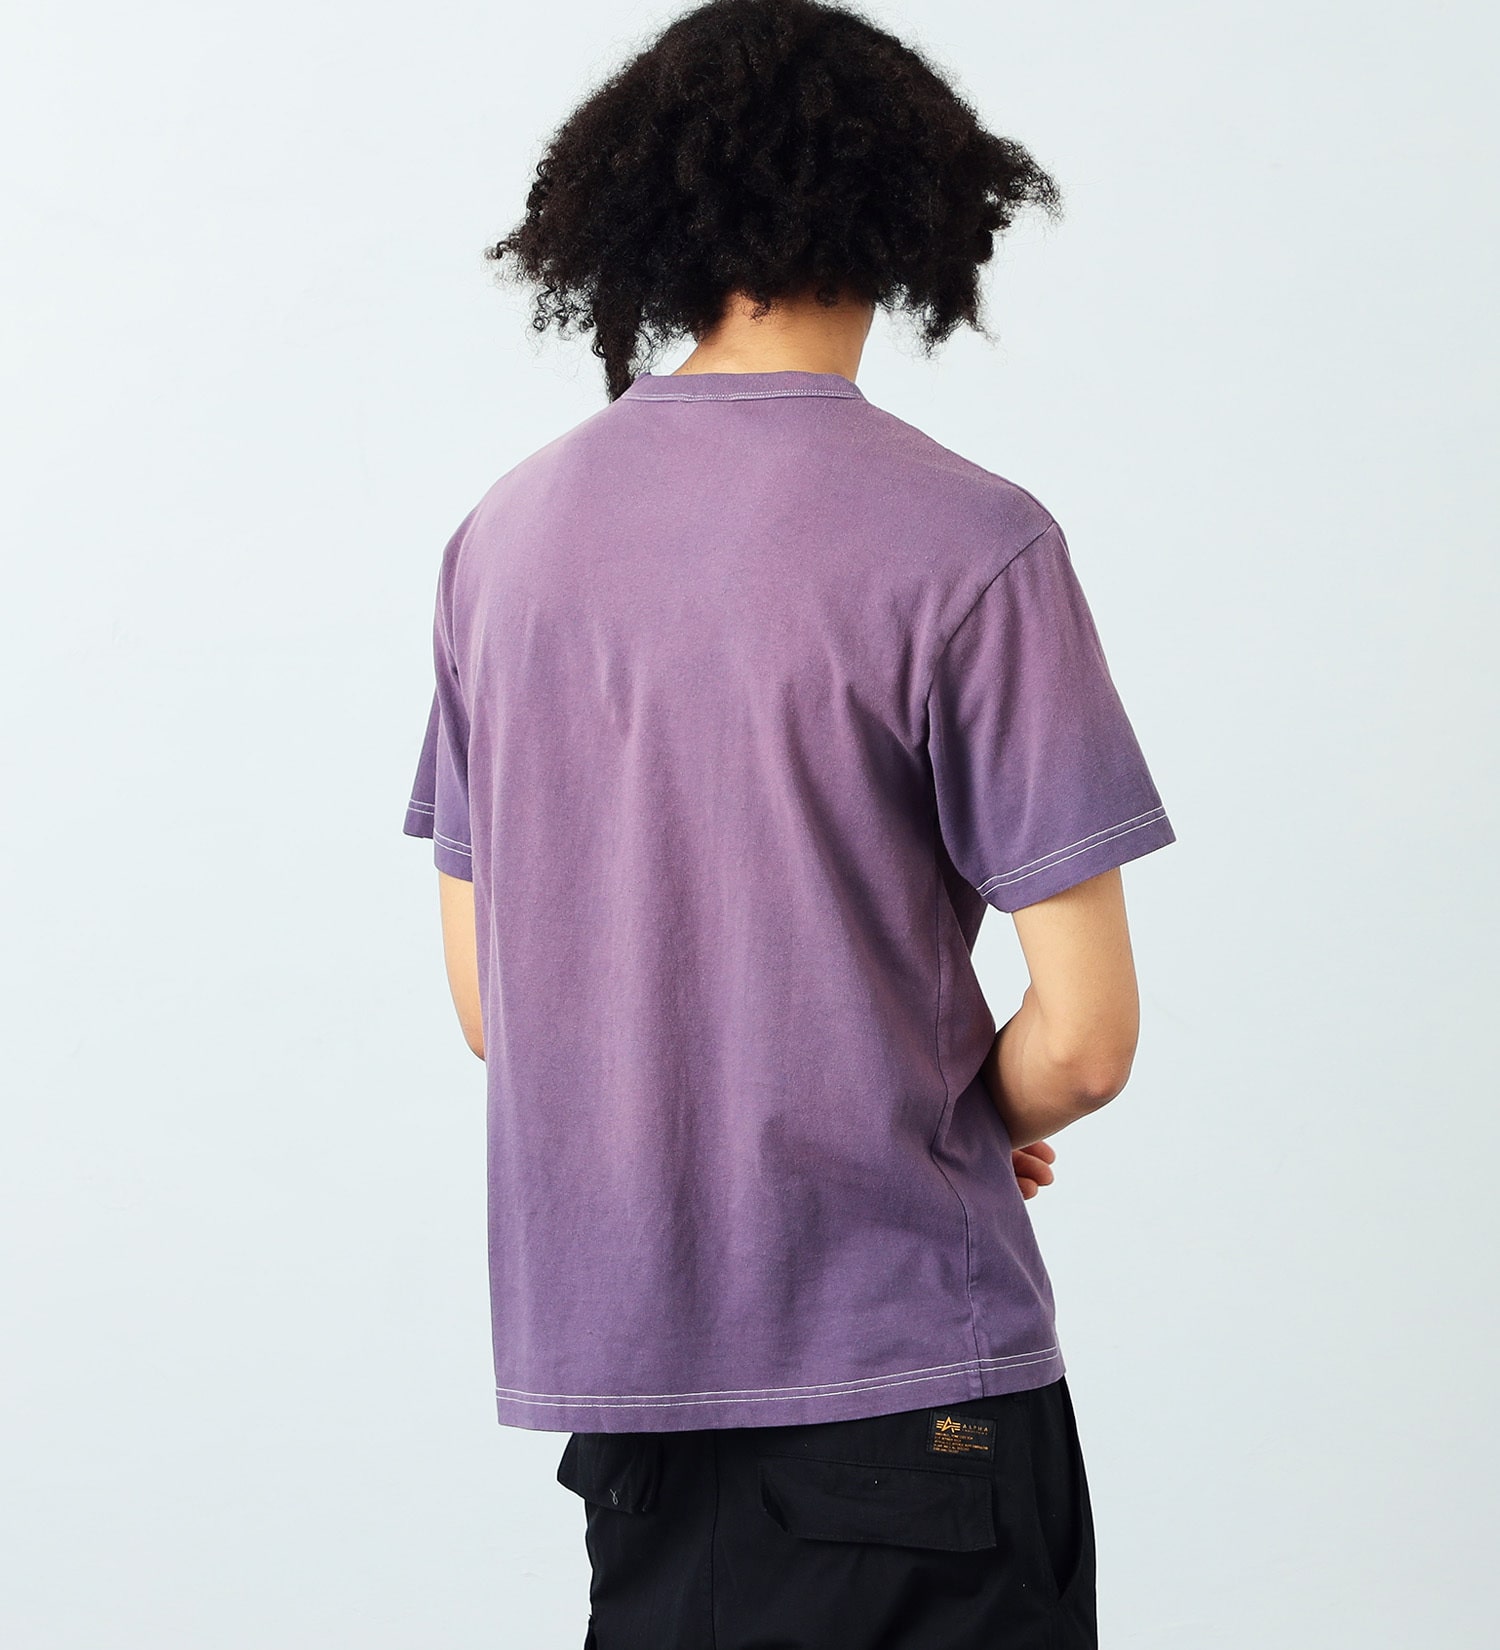 ALPHA(アルファ)のガーメントダイ半袖Tシャツ A.I.|トップス/Tシャツ/カットソー/メンズ|パープル